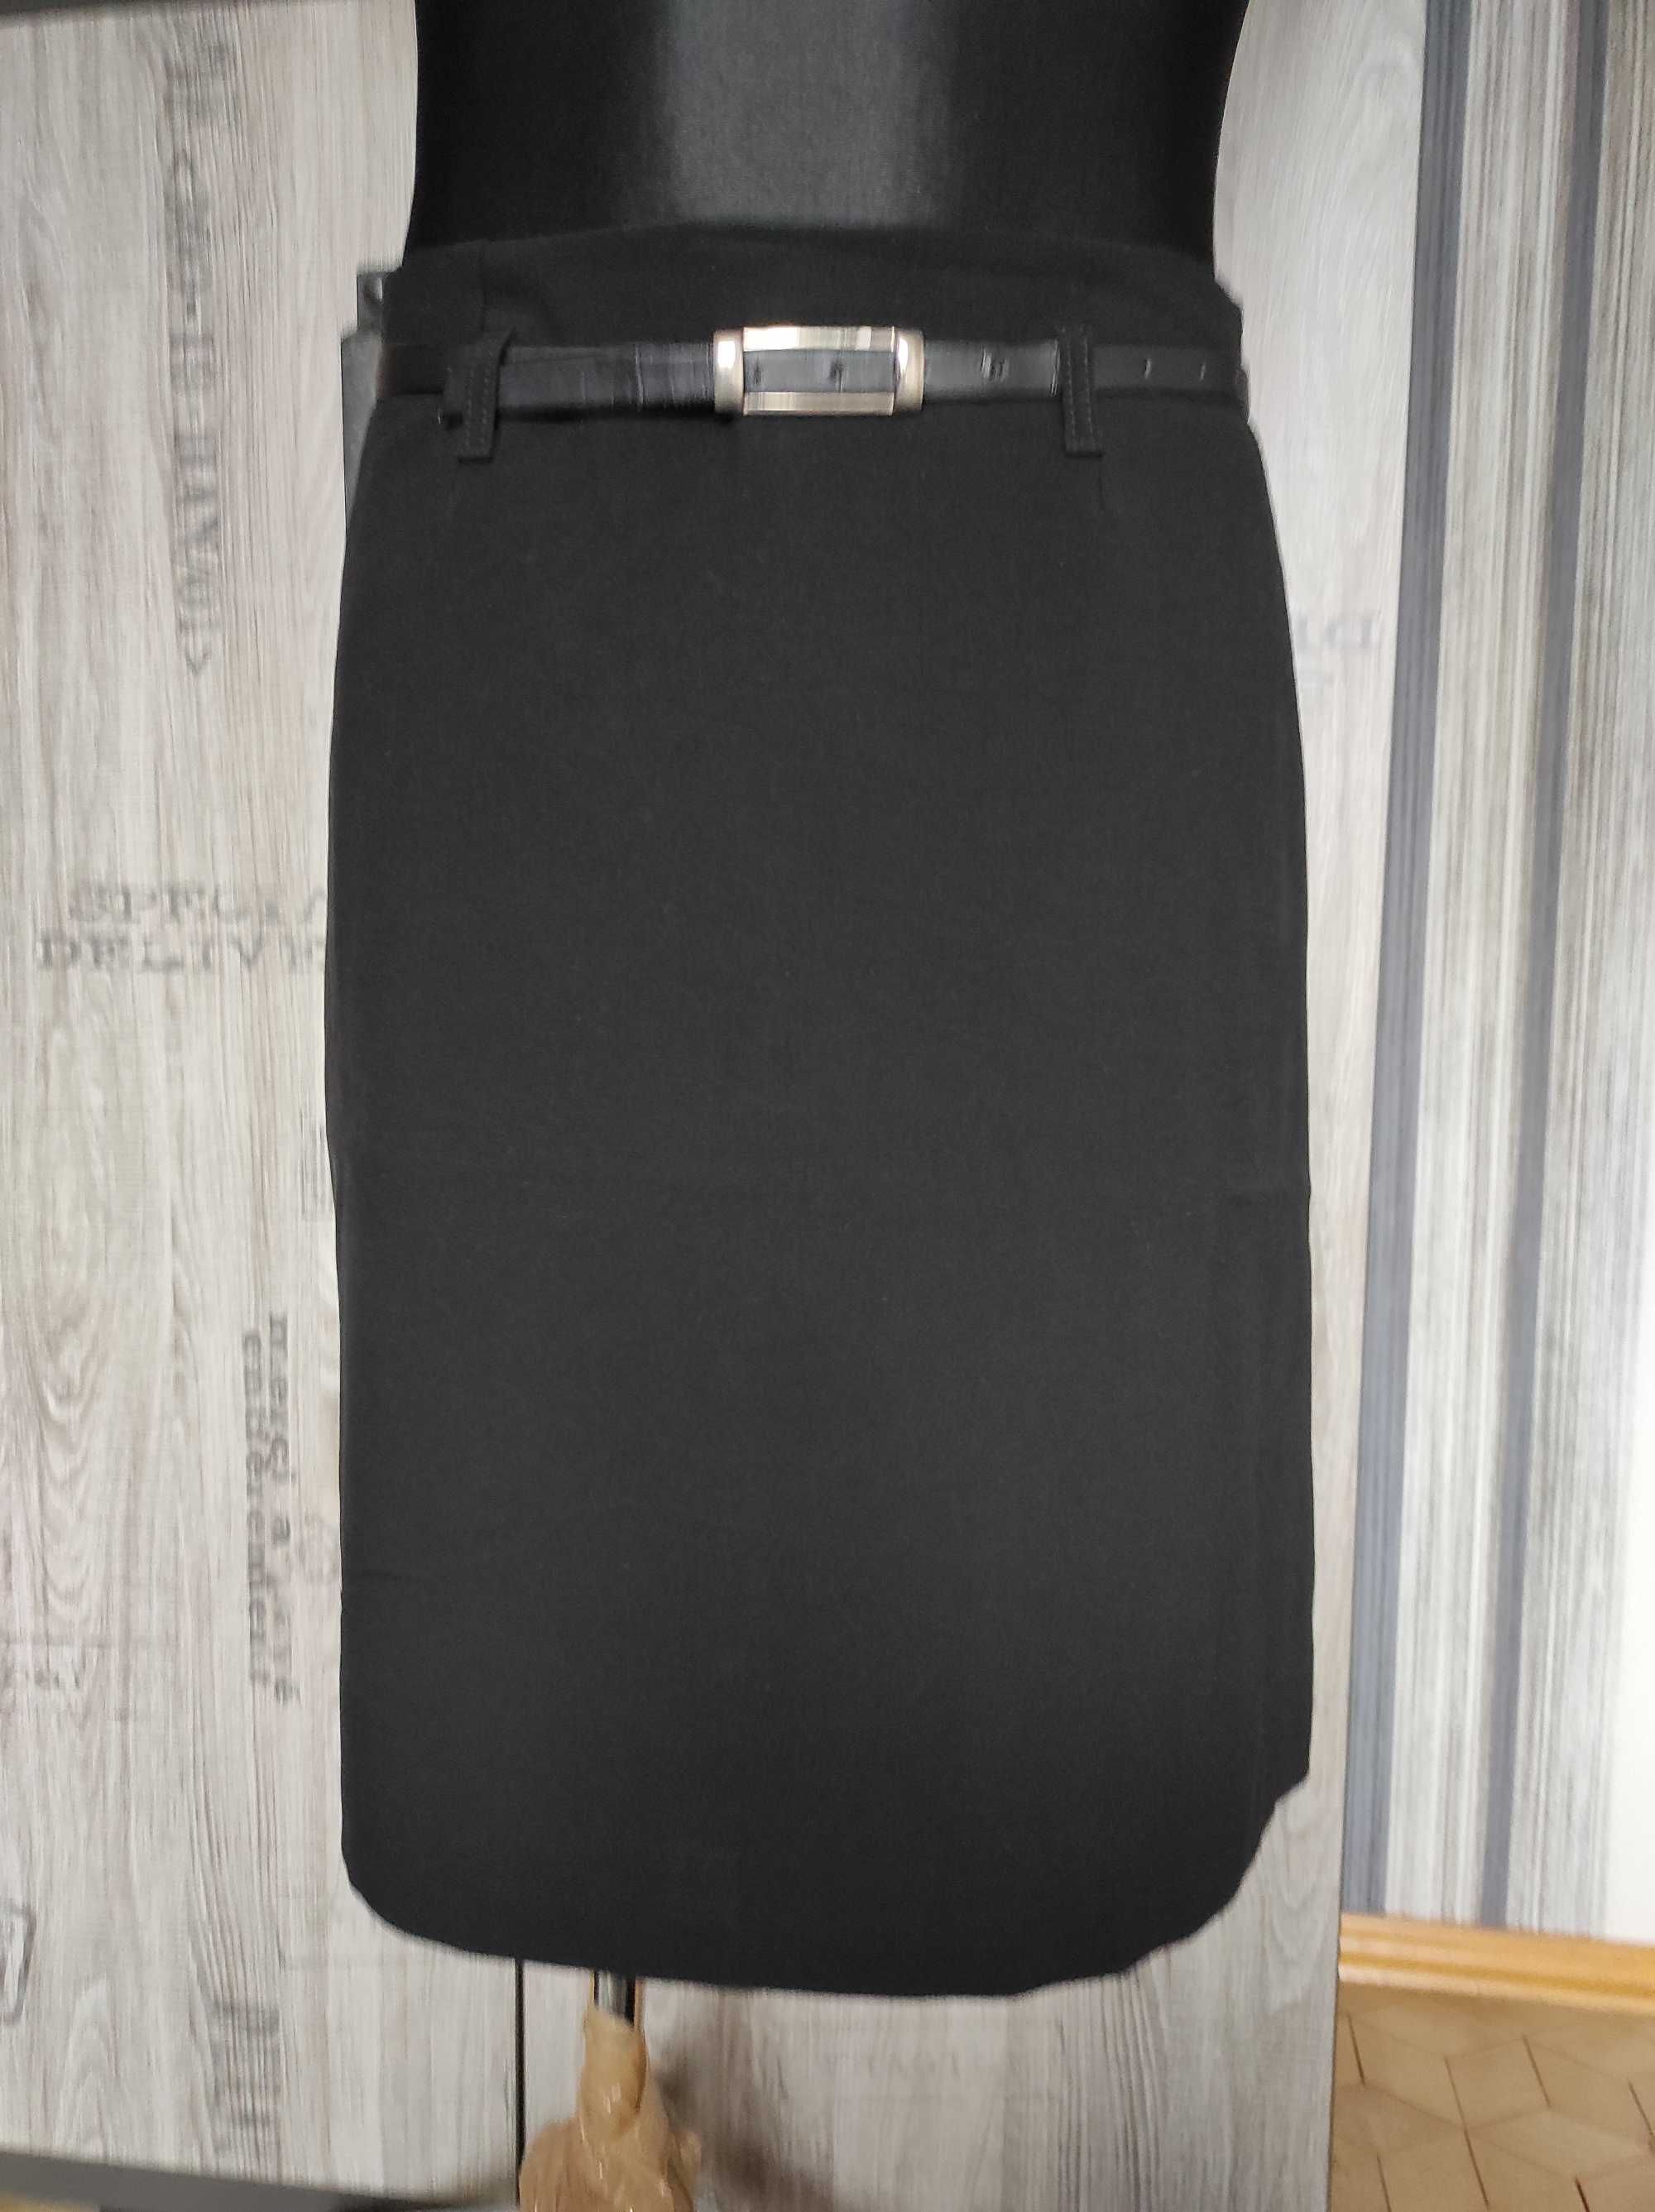 Spódnica damska, czarna, rozmiar 40, produkt polski